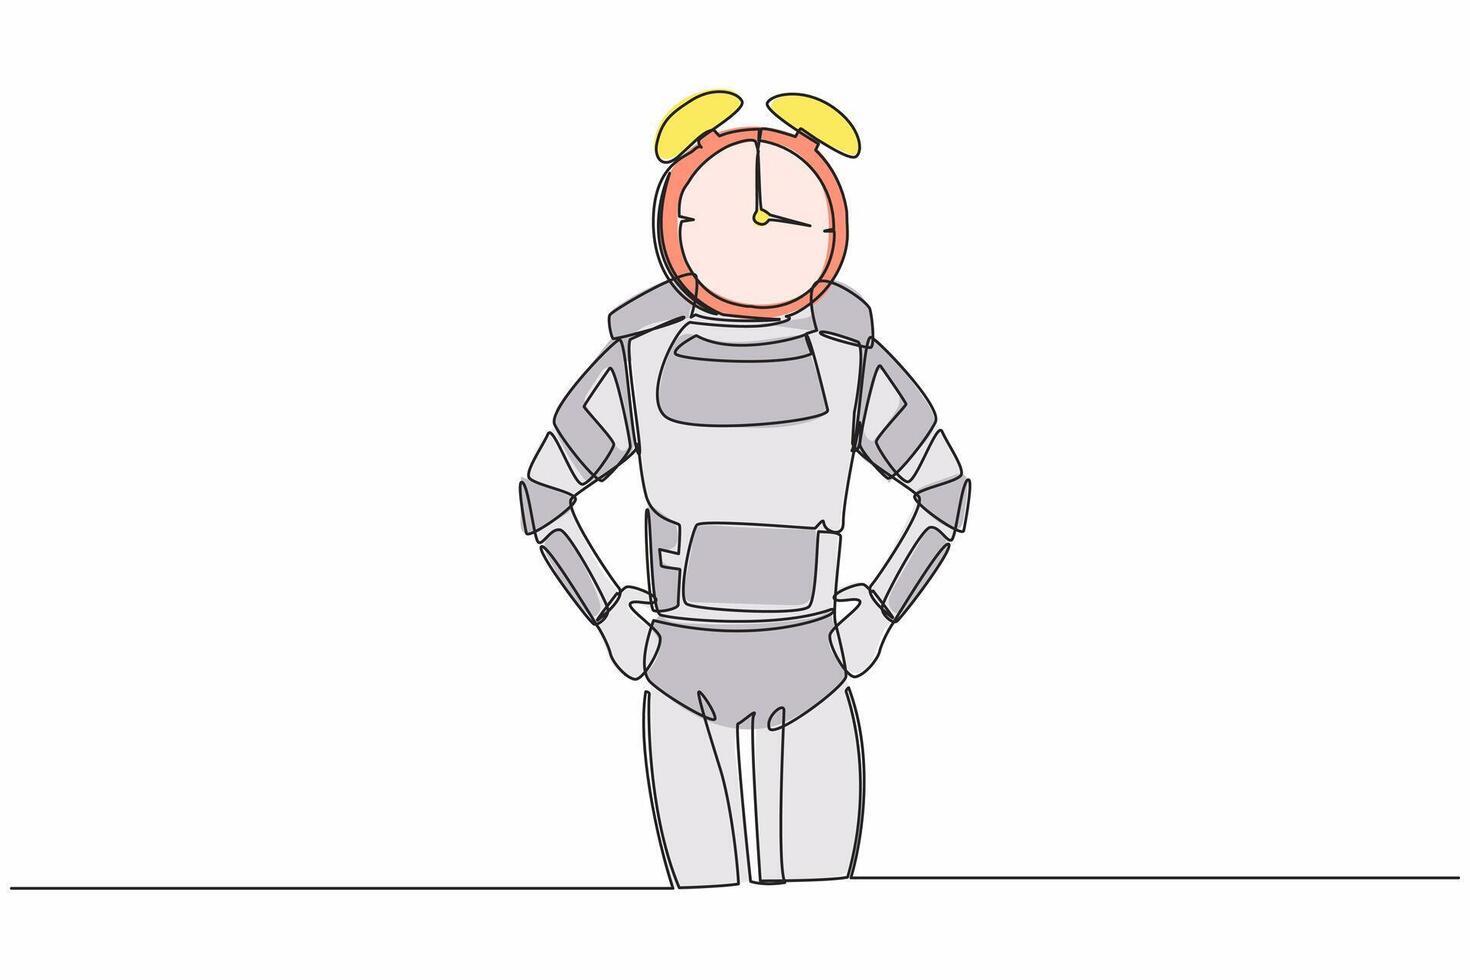 continuo uno línea dibujo de joven astronauta con alarma reloj en lugar de cabeza. astronauta estrés en astronave exploración proyecto. cosmonauta exterior espacio. soltero línea gráfico diseño vector ilustración